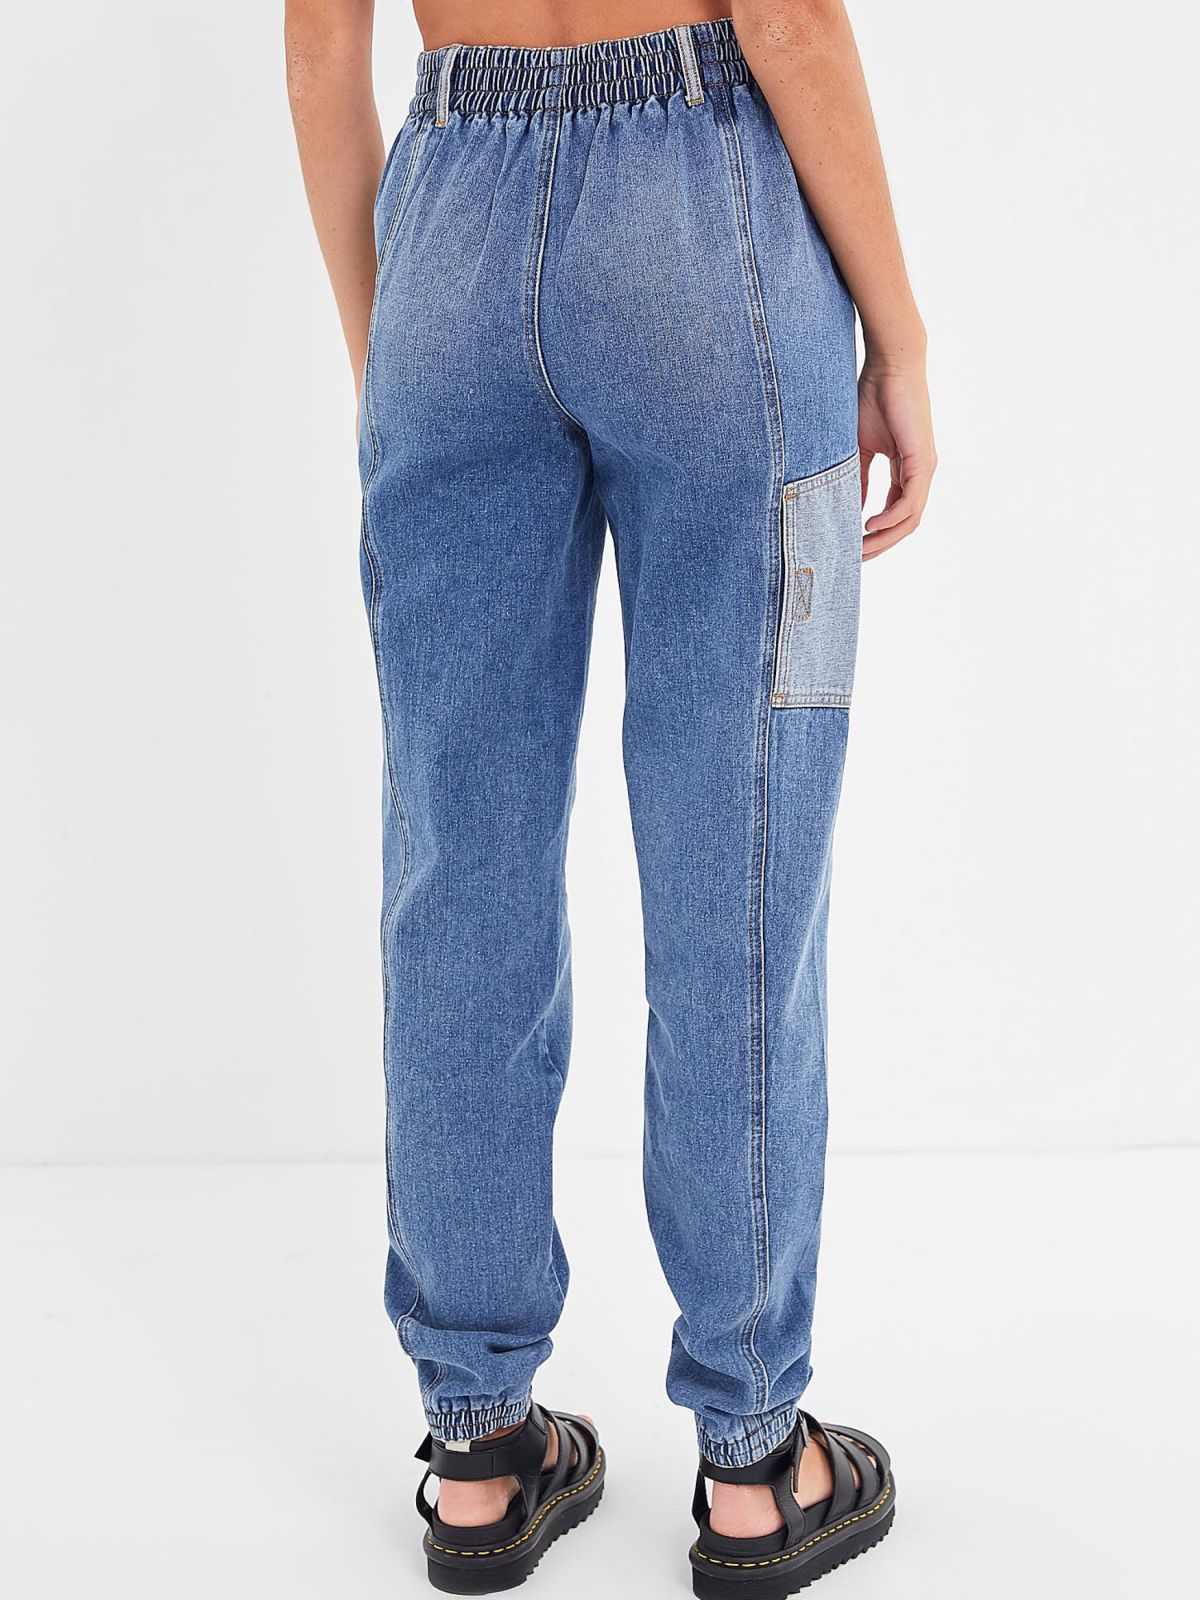  ג'ינס גבוה בשטיפה כהה עם פאצ'ים בהירים BDG של URBAN OUTFITTERS